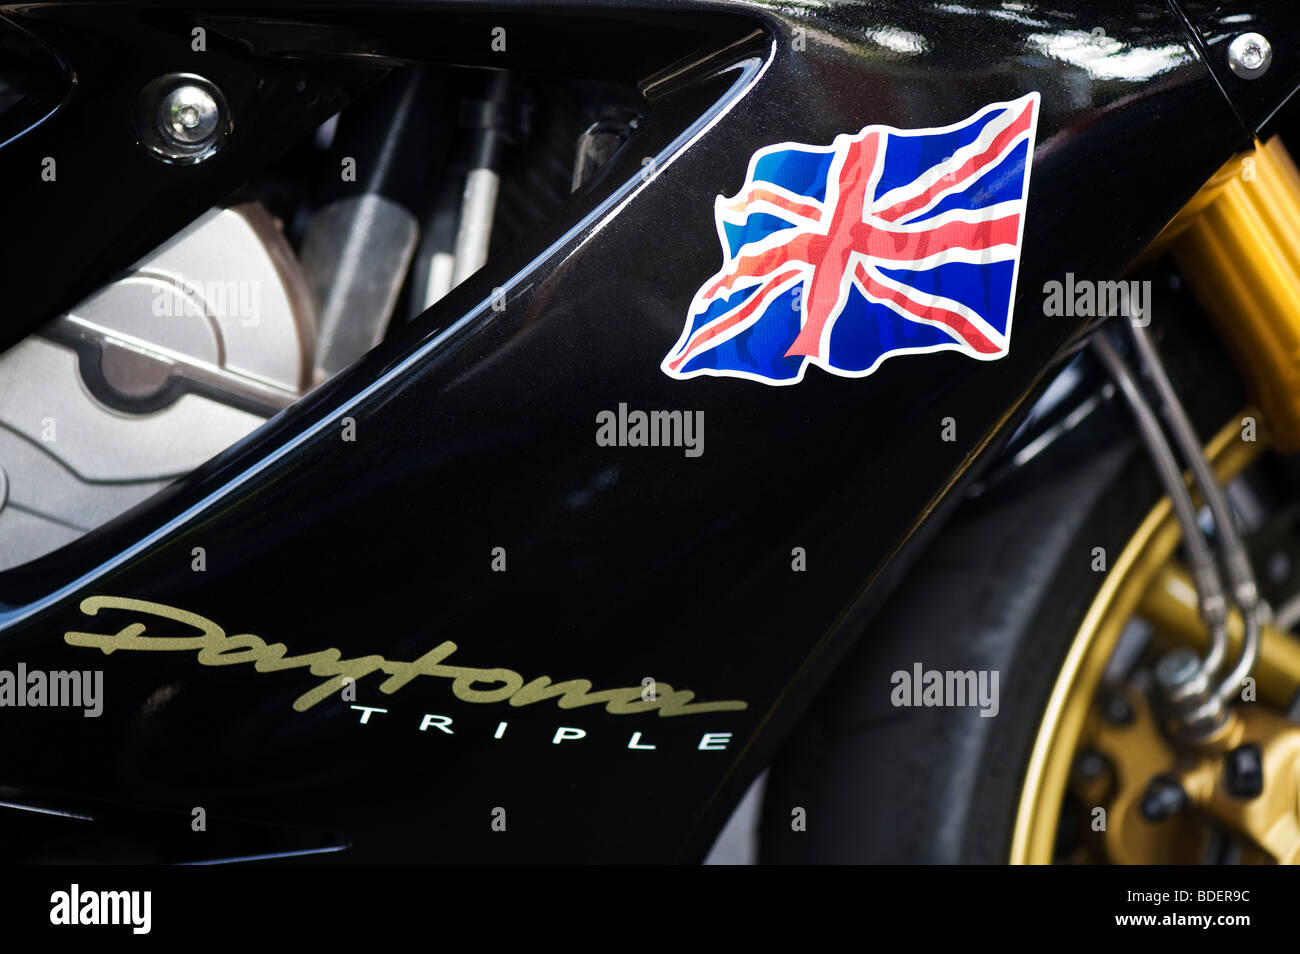 Triumph Daytona, moderne britische Motorrad mit Union Jack Flagge Aufkleber Stockfoto